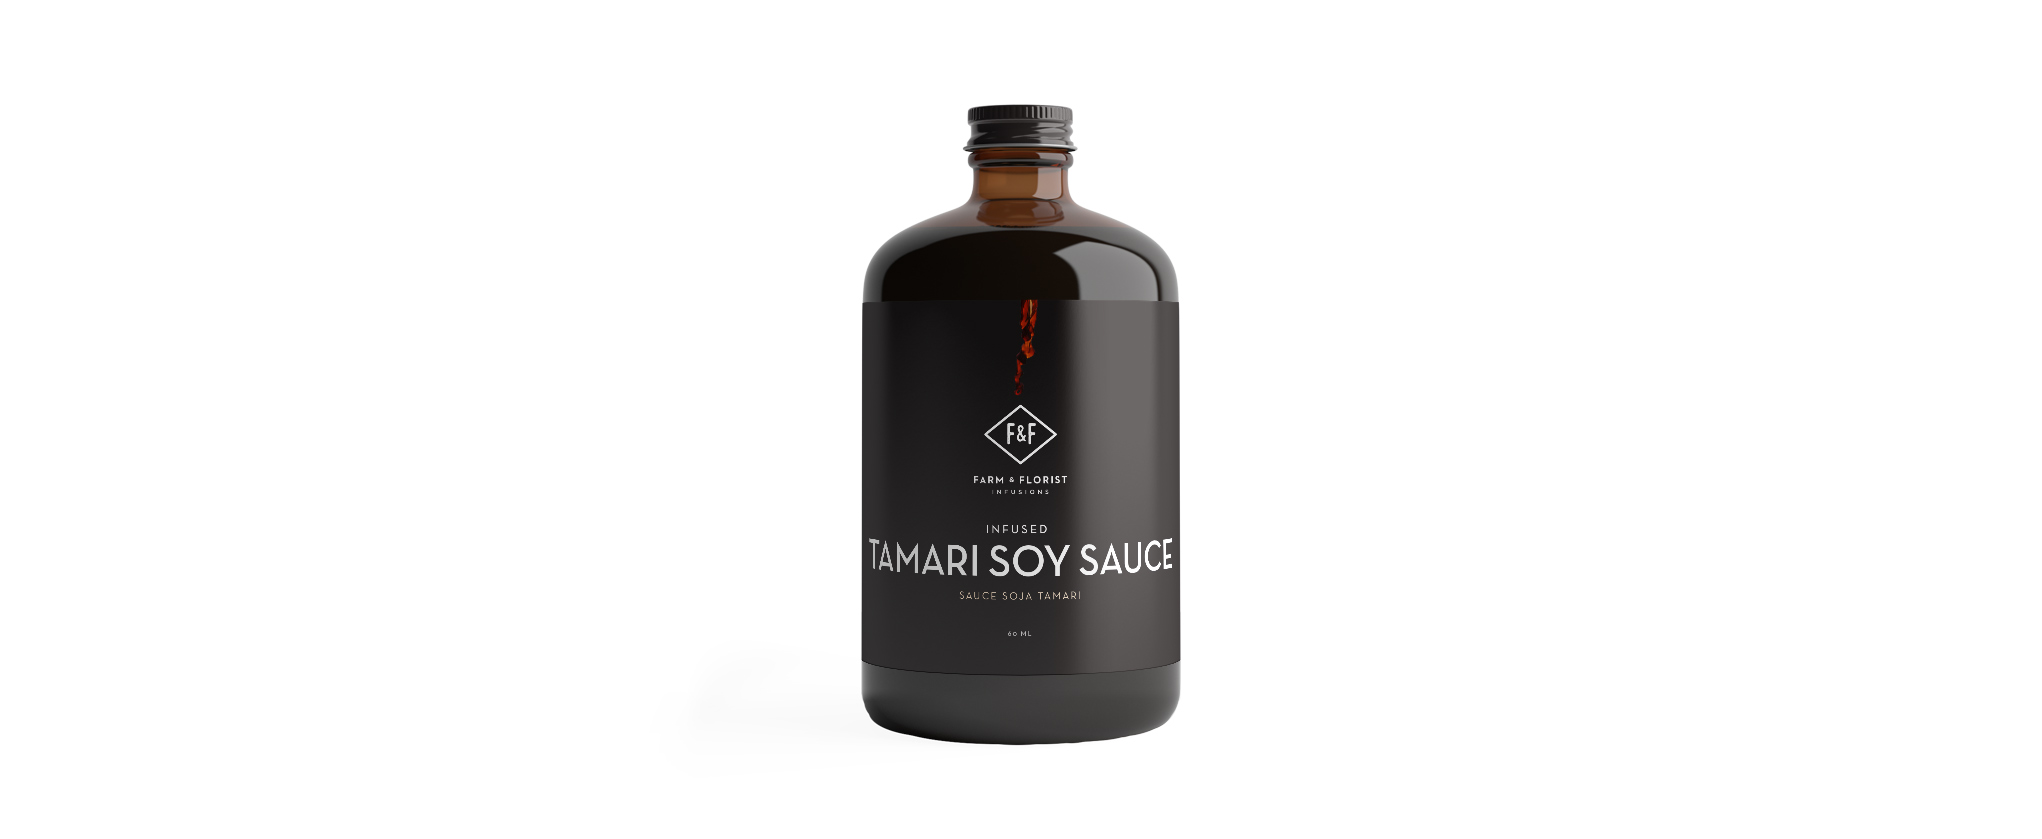 FF-Product-Banner-Image-Tamari-Soy-Sauce[2042-x-839][NC]